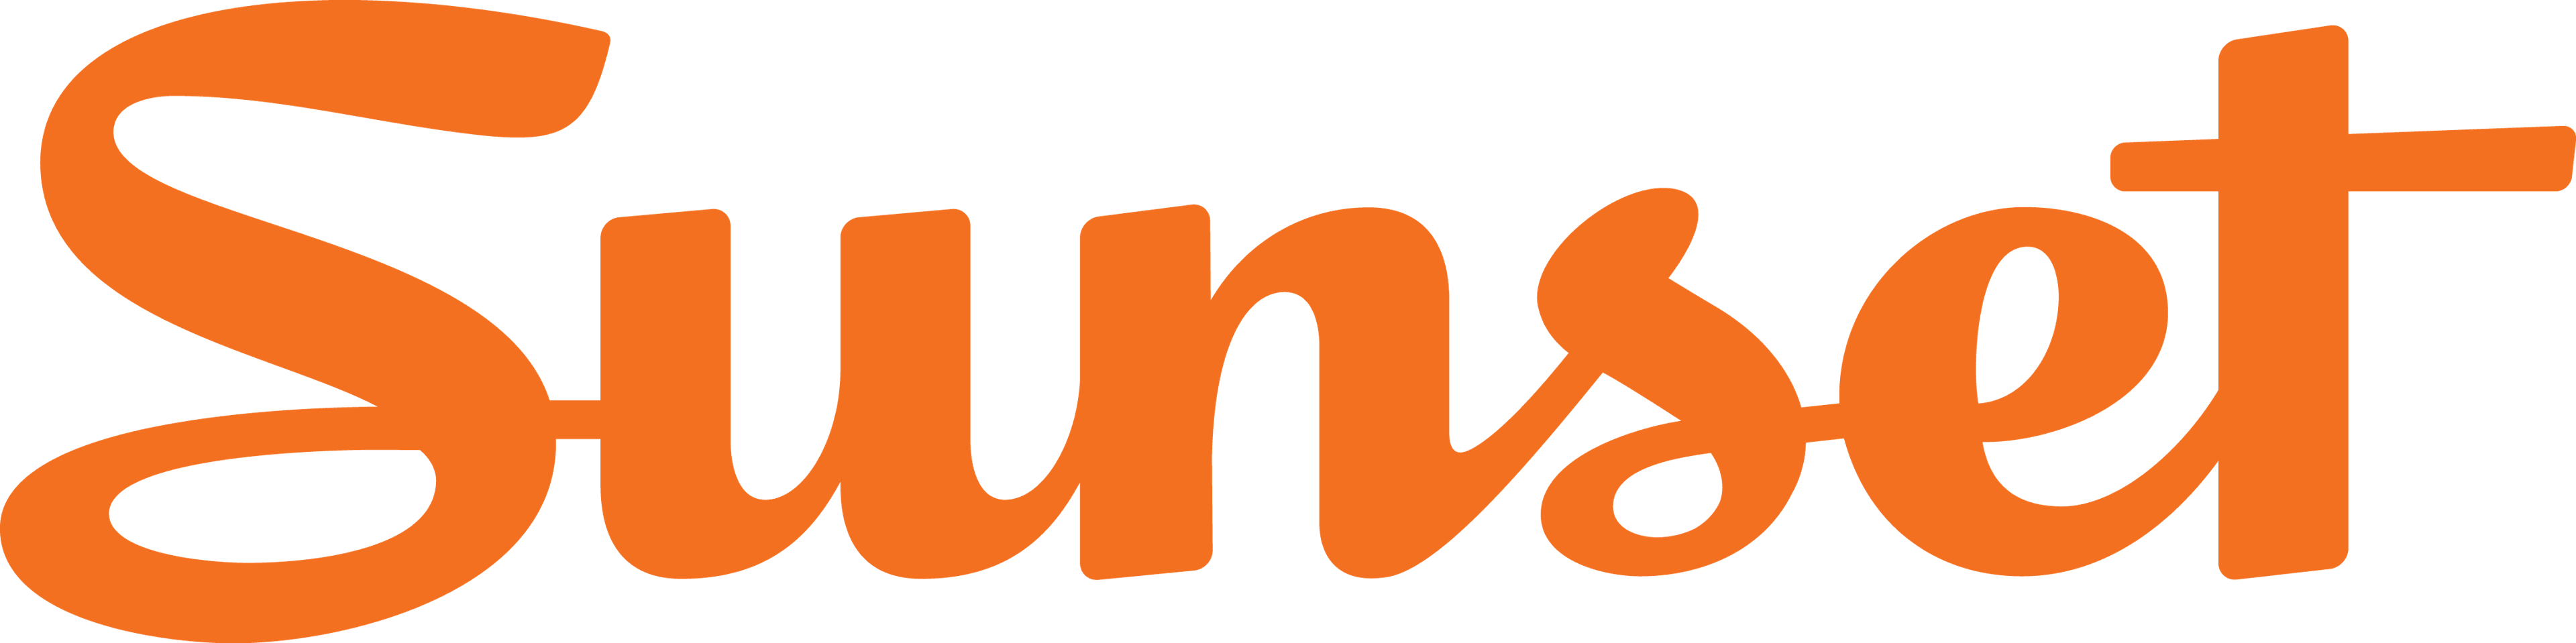 Sonoma Sunset magazine logo